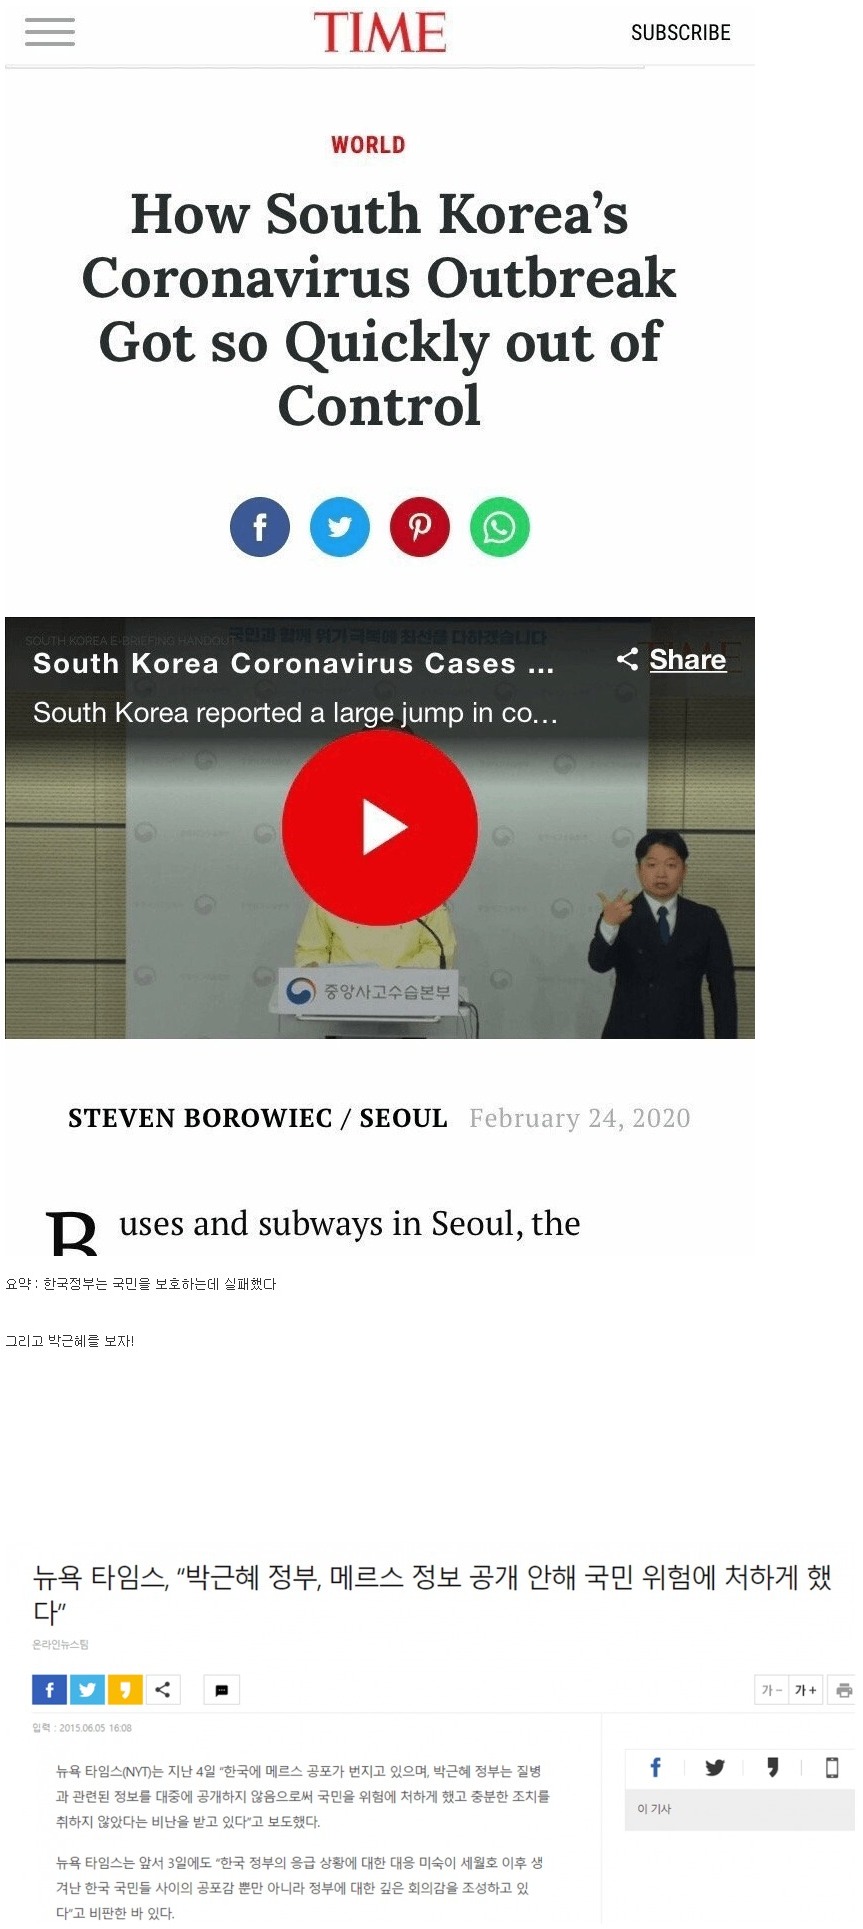 타임지의 한국 정부 평가